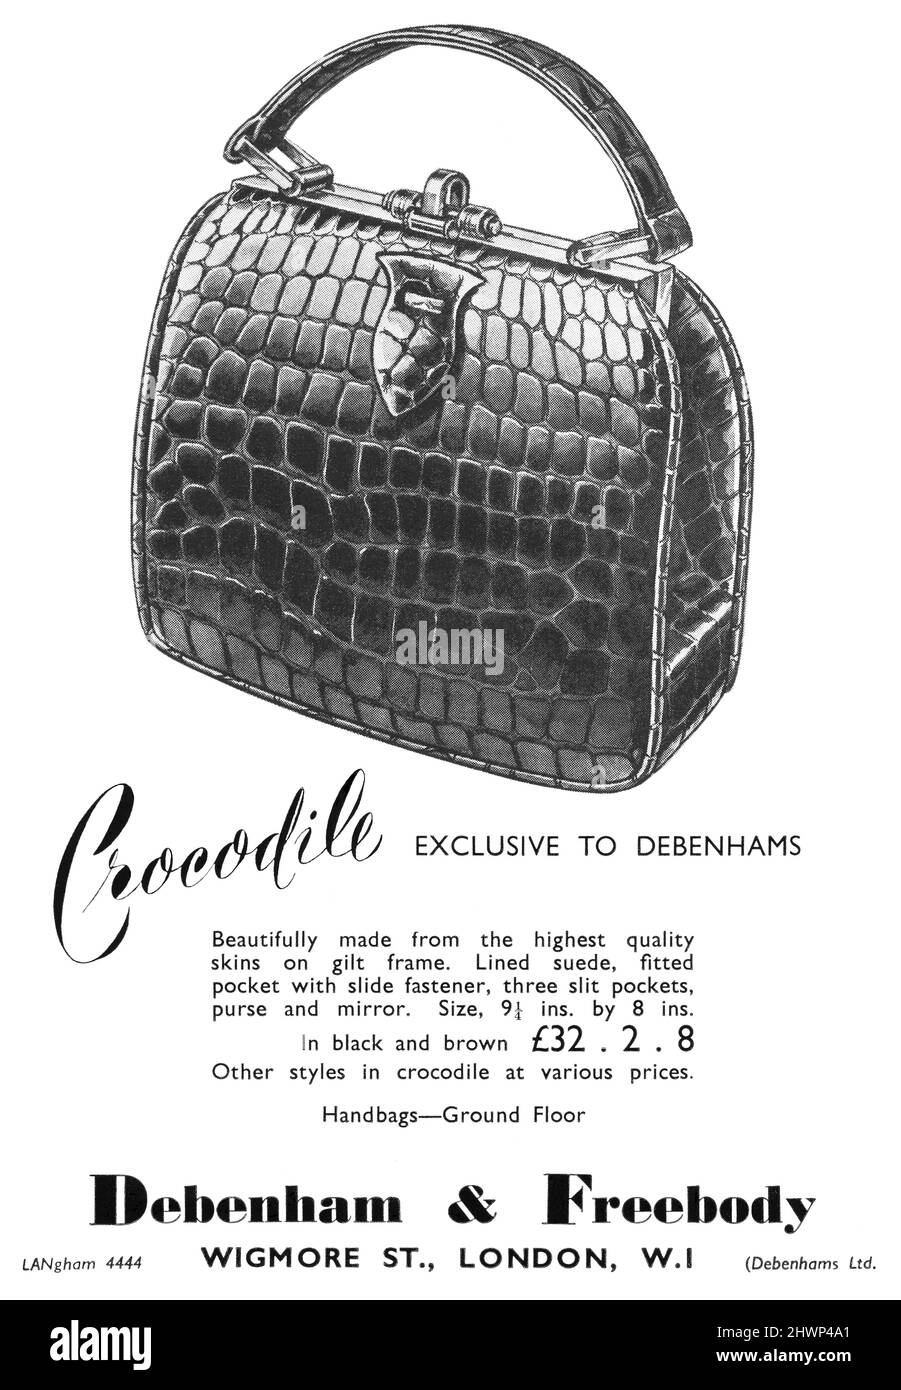 history 1940s handbags